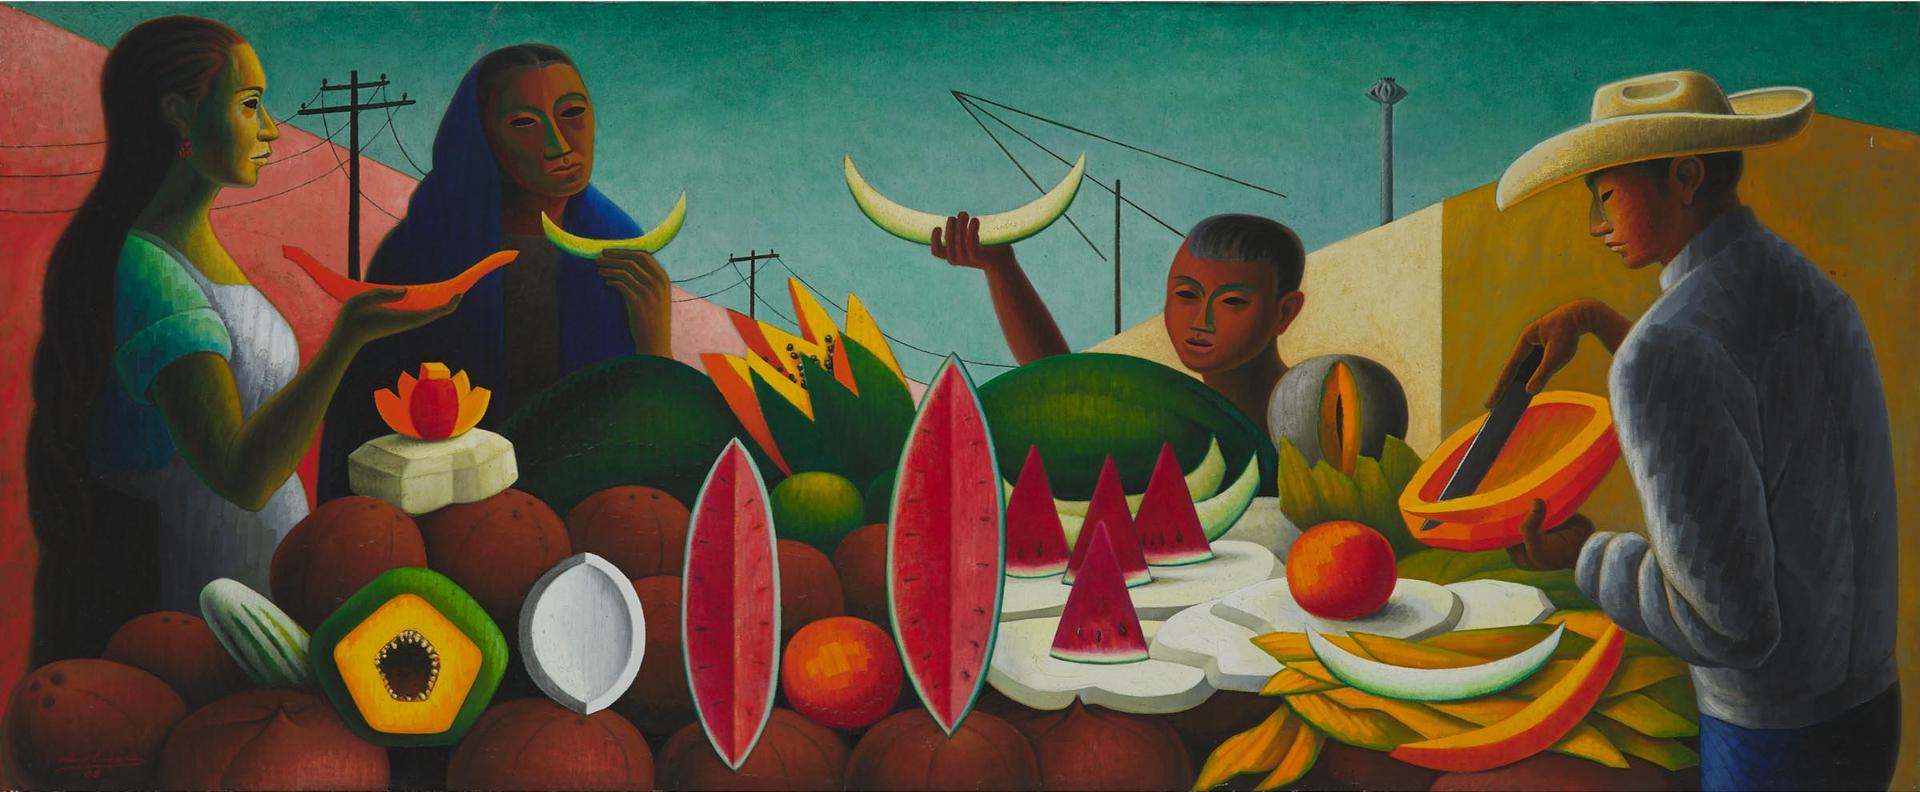 Arturo Estrada (1925) - Mujeres Comiendo Melon, 1960